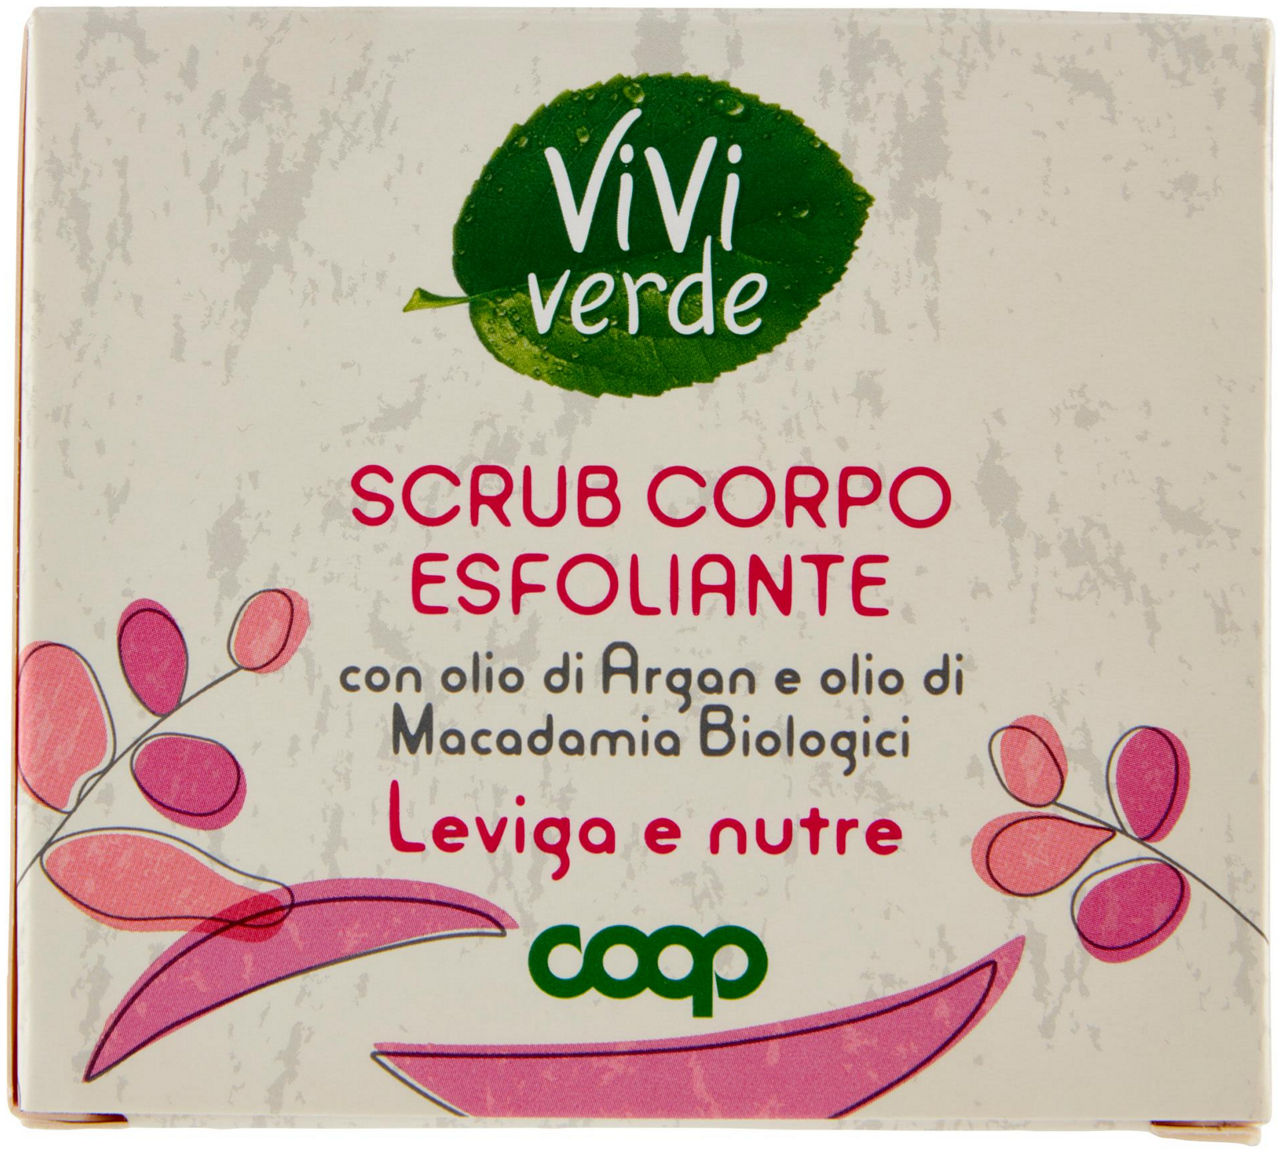 Scrub Corpo Esfoliante Vivi Verde 400 g - 2